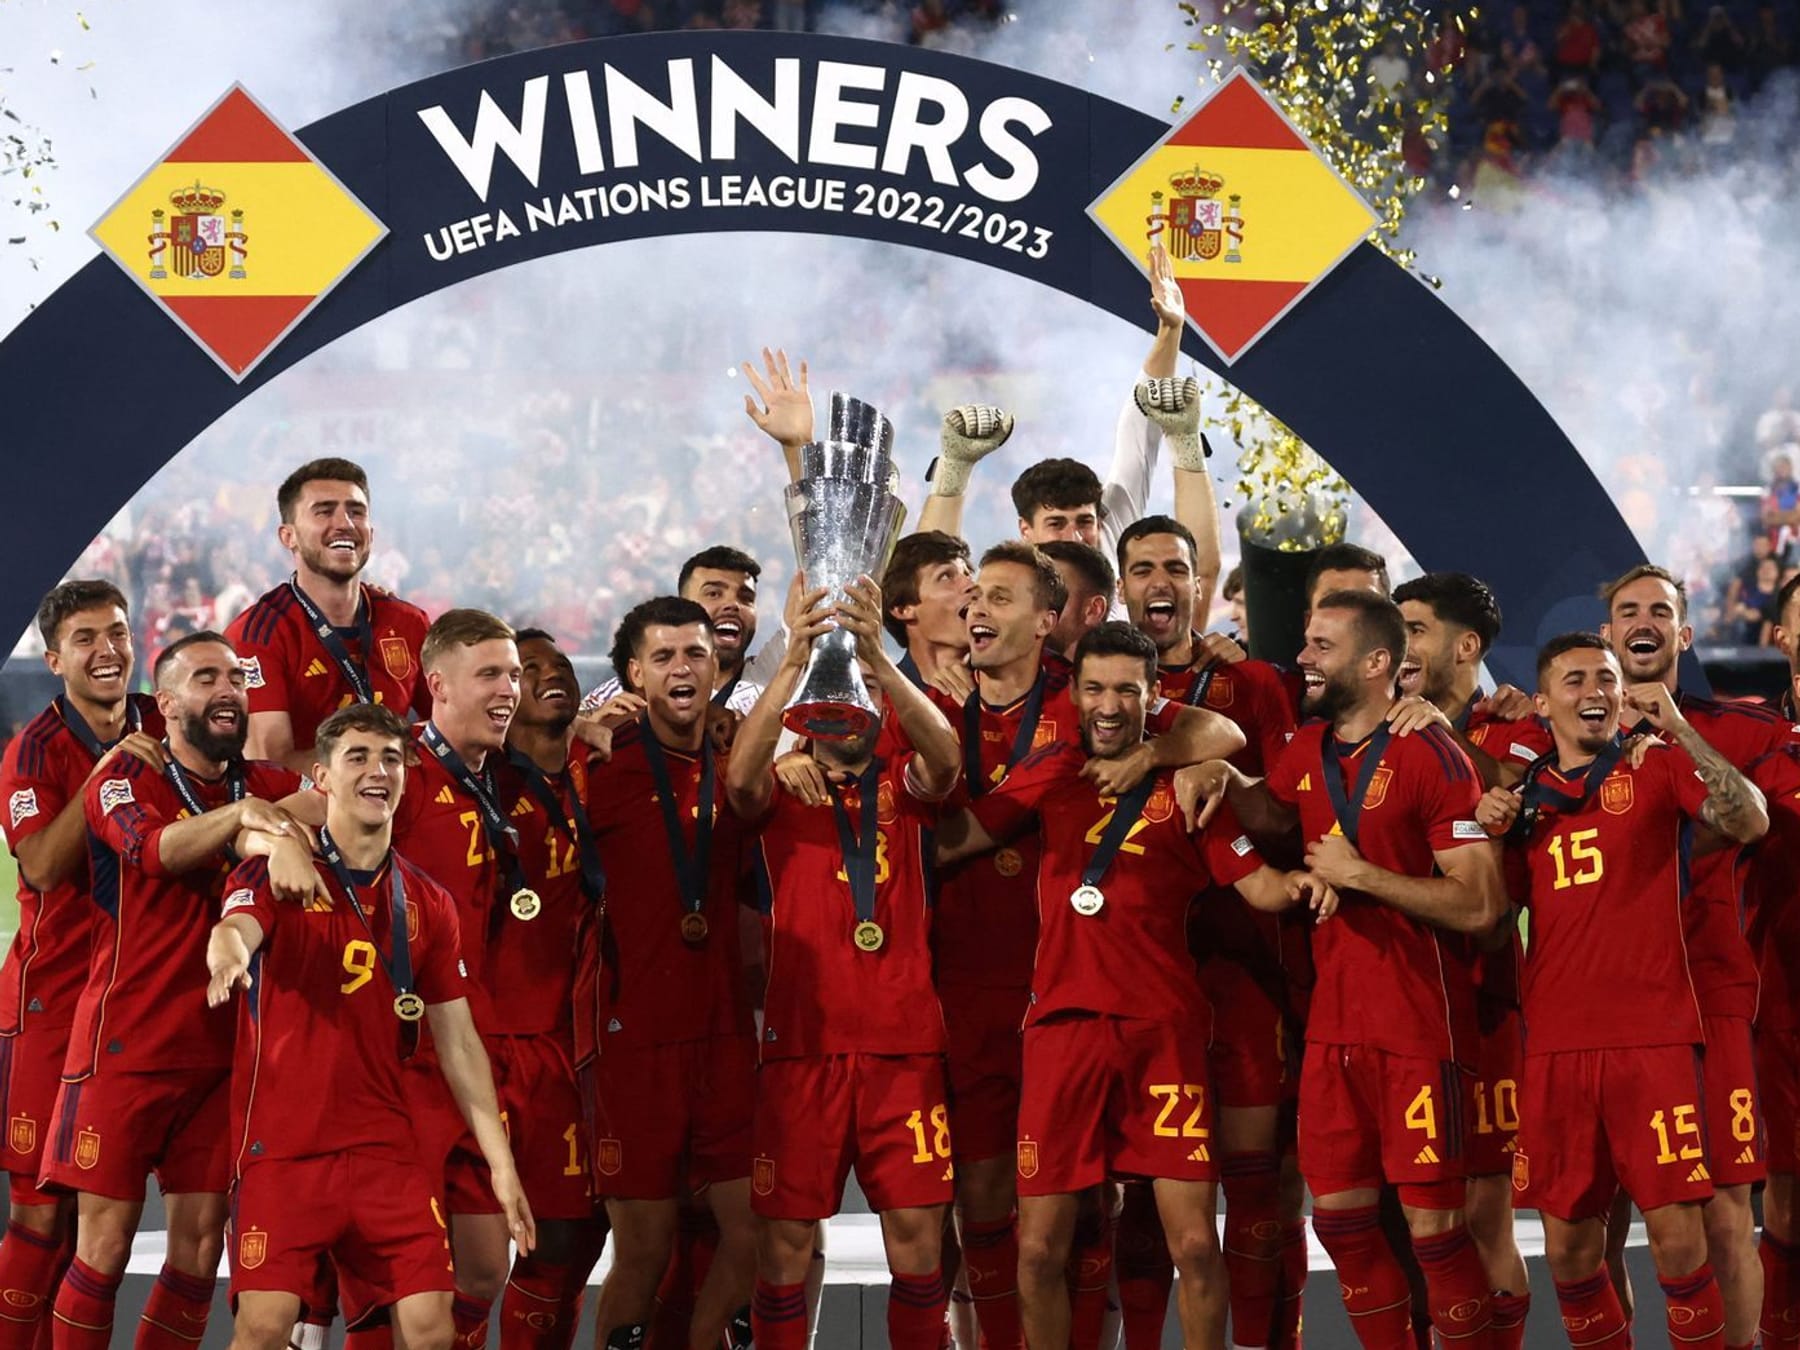 Nations League Spanien gewinnt Finale gegen Kroatien im Elfmeterschießen